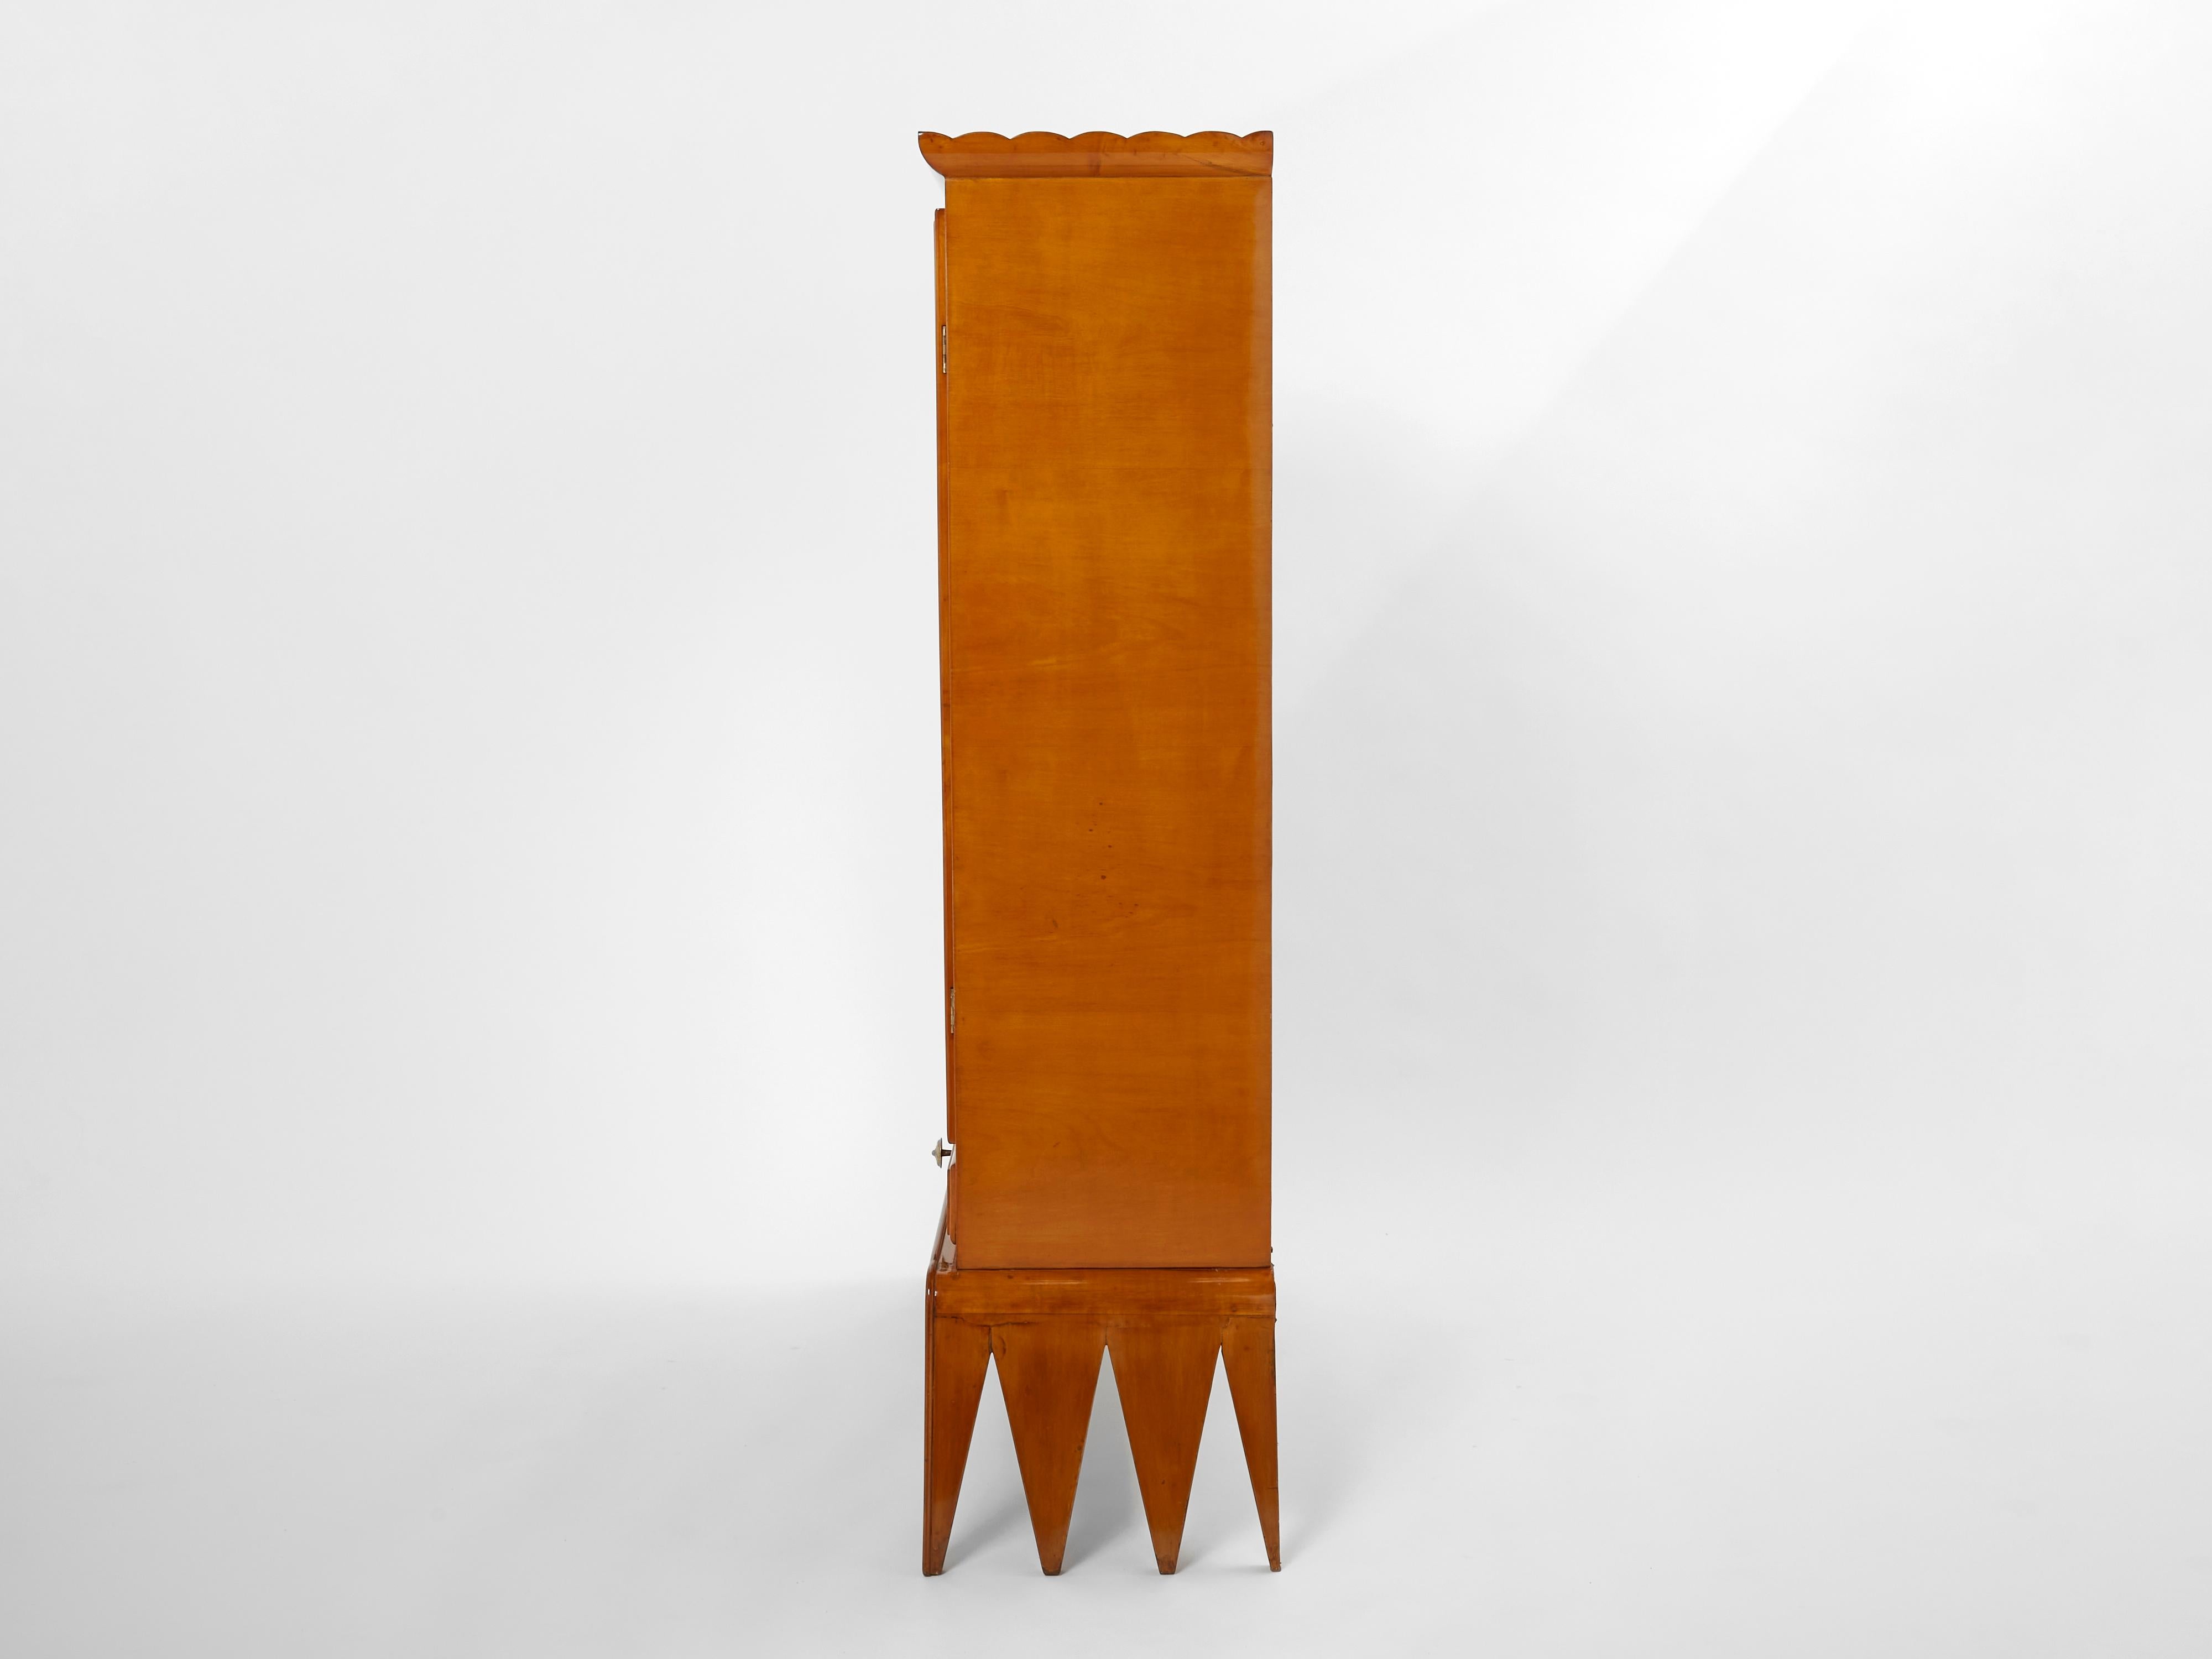 Osvaldo Borsani Cherry Wood Mirrored Bar Cabinet for Abv, 1940 For Sale 4